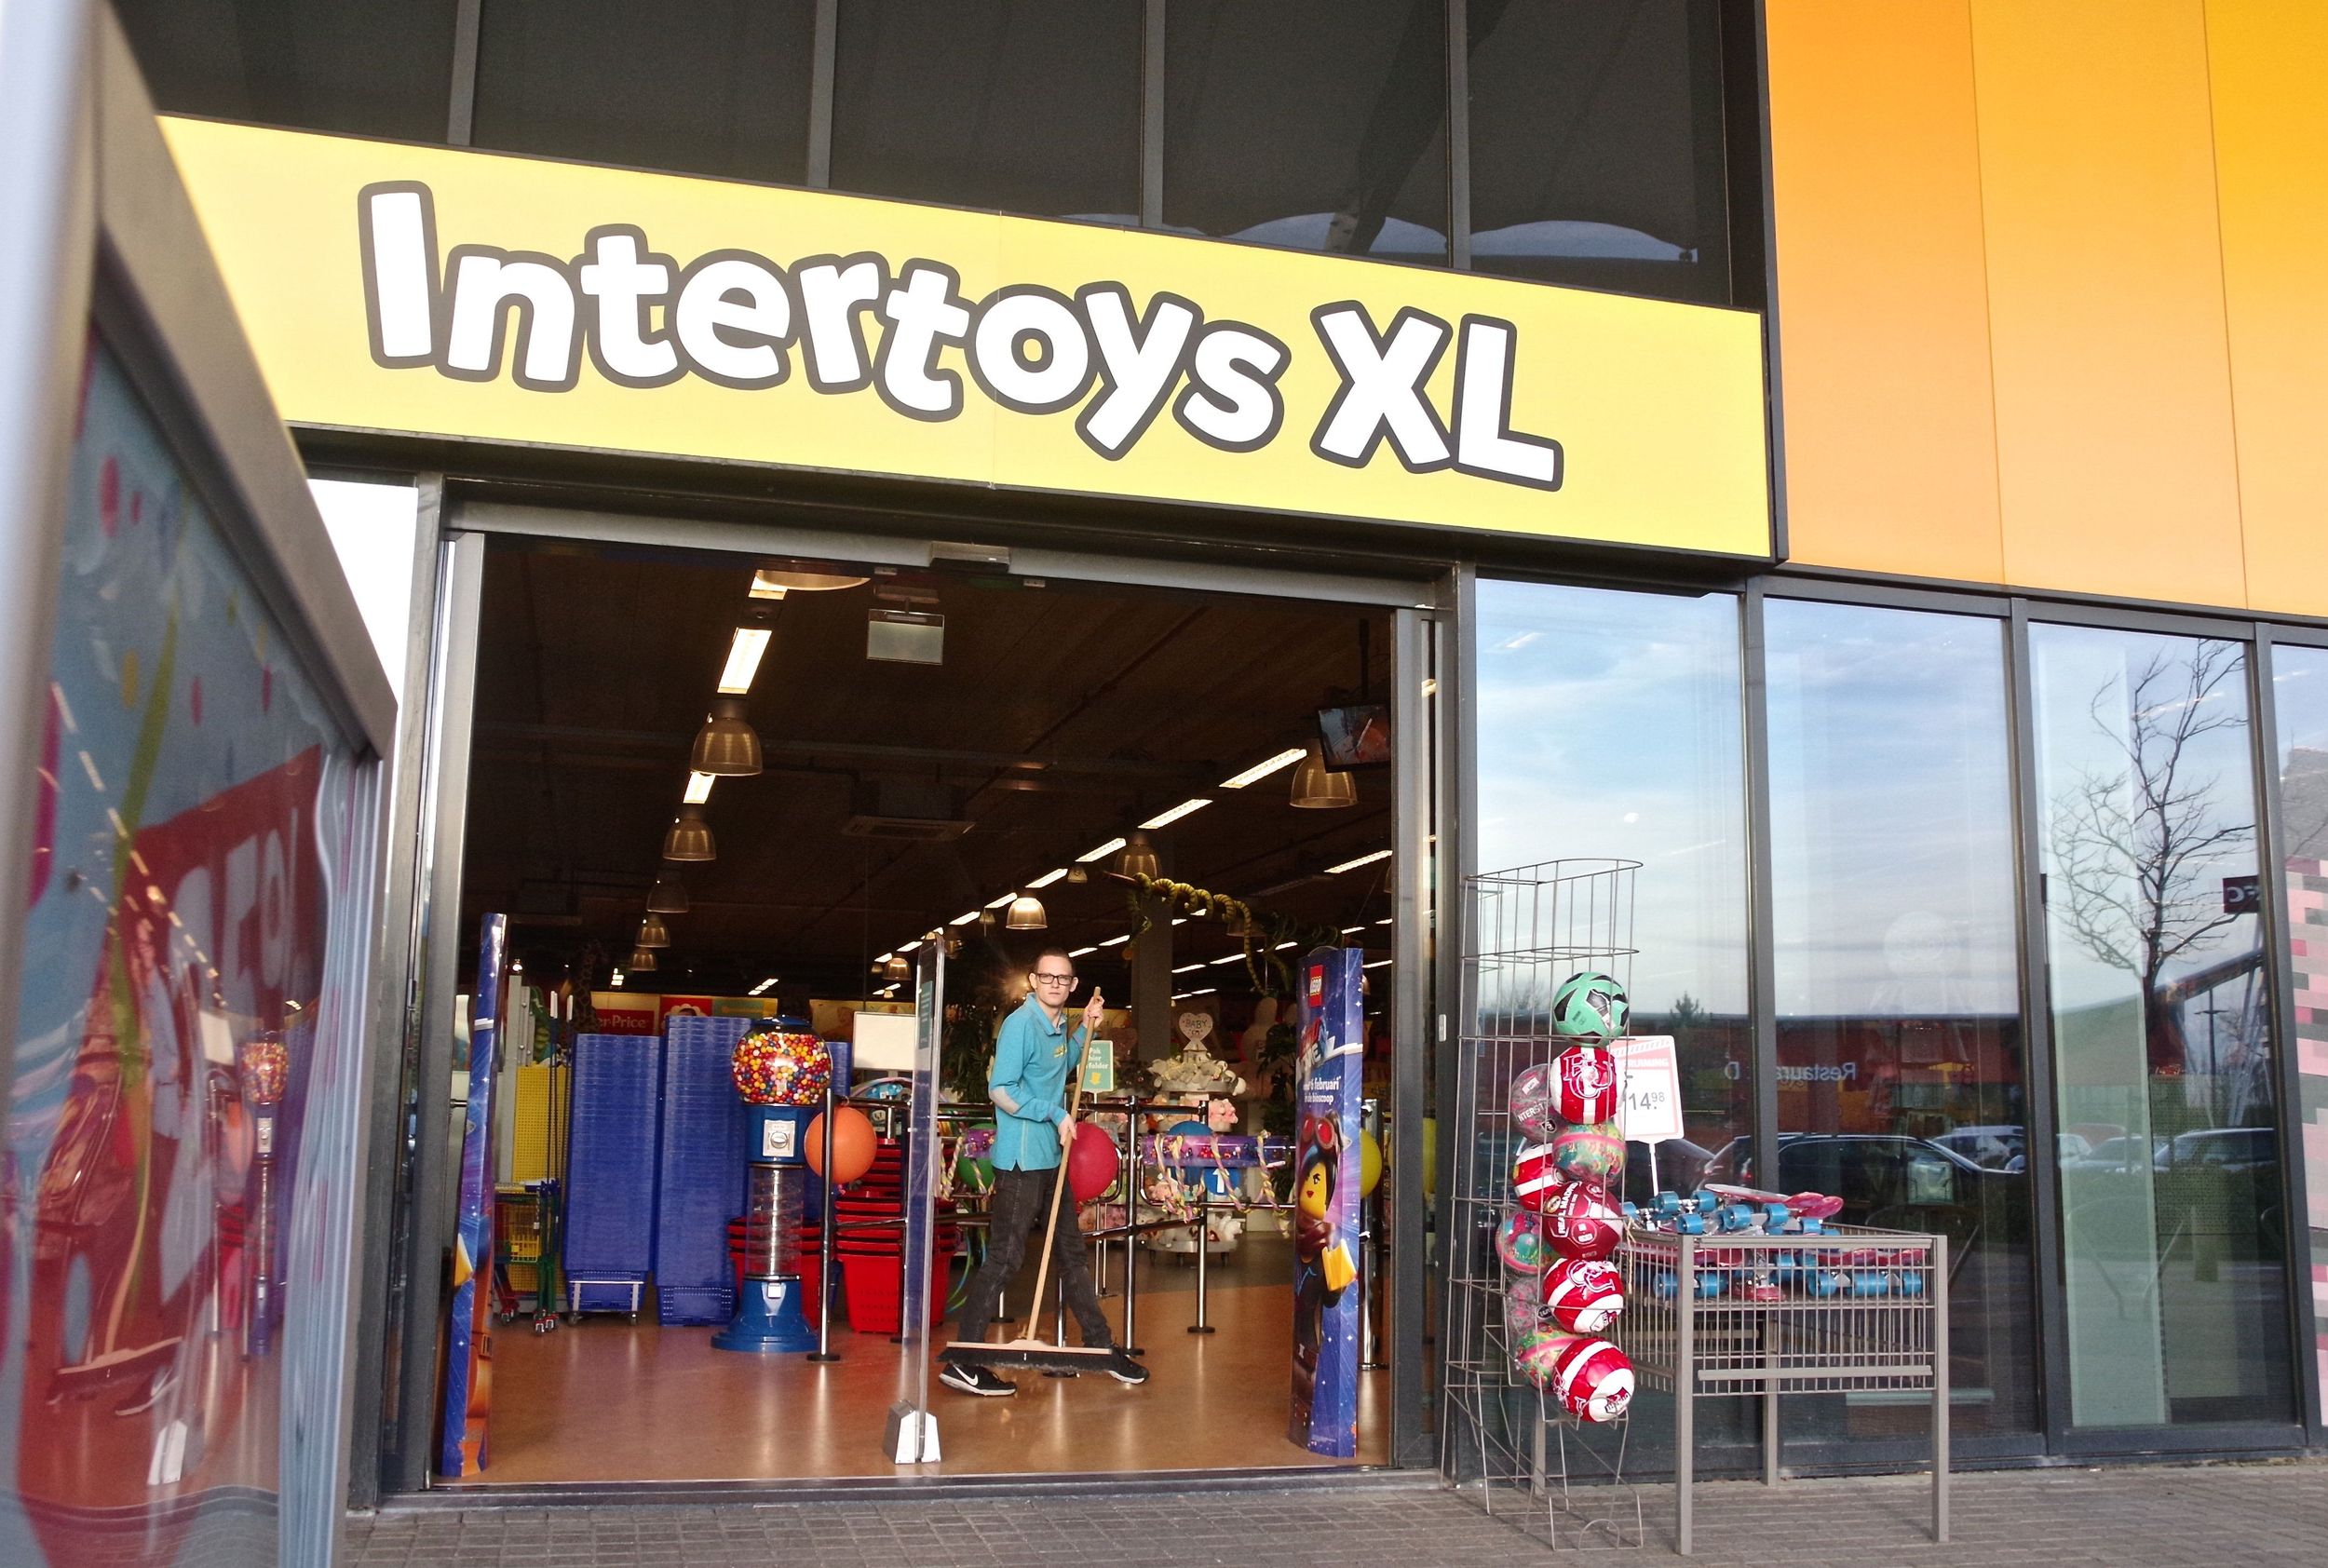 Beyond Meerdere lava Zware tijden speelgoedwinkel treffen personeel èn klant